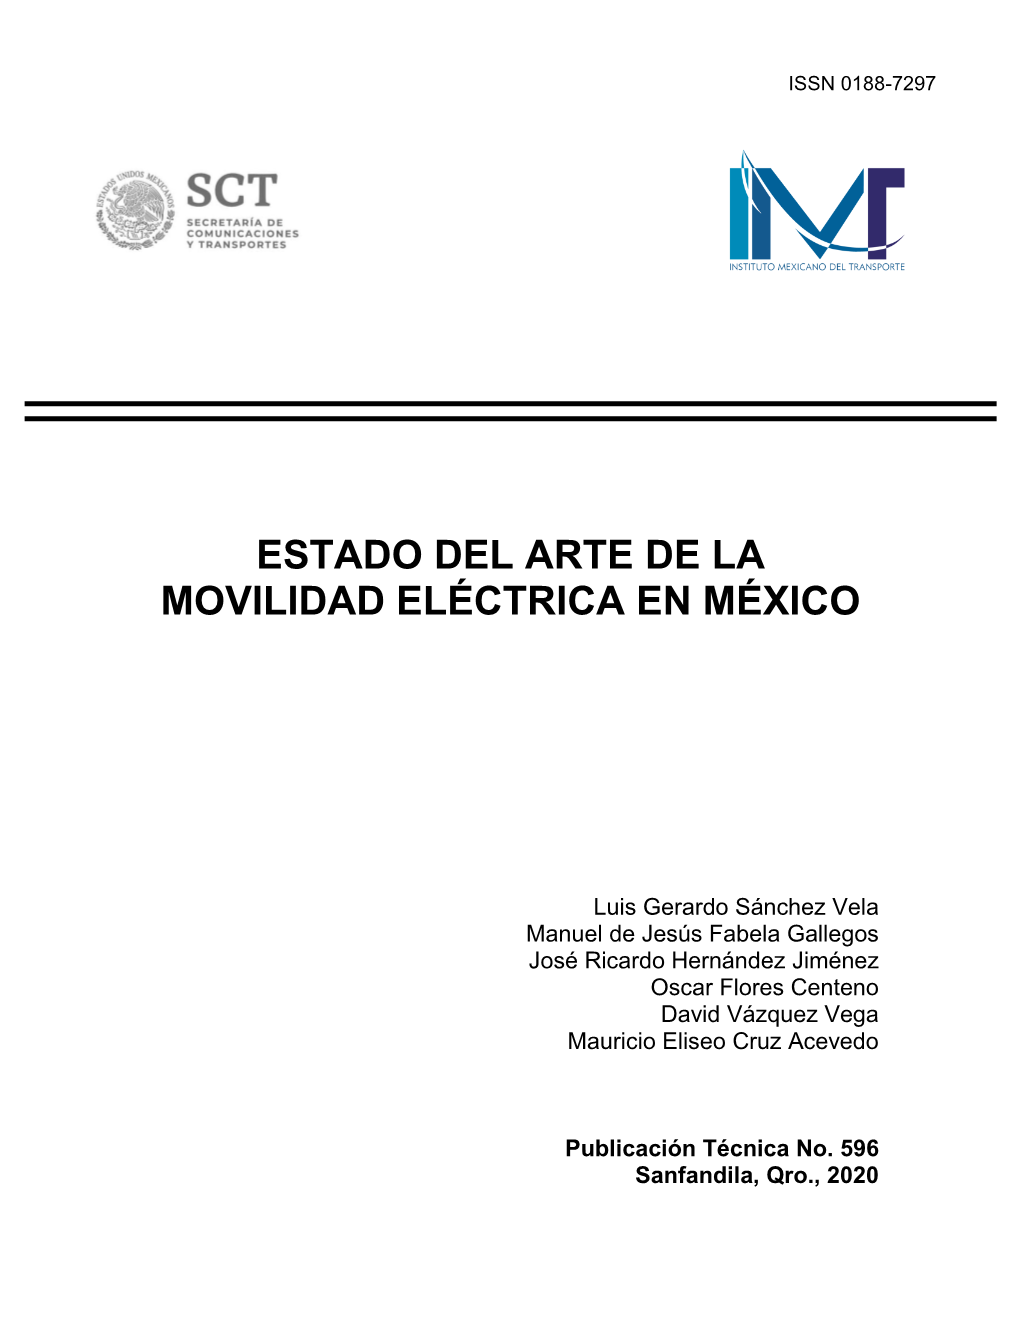 Estado Del Arte De La Movilidad Eléctrica En México